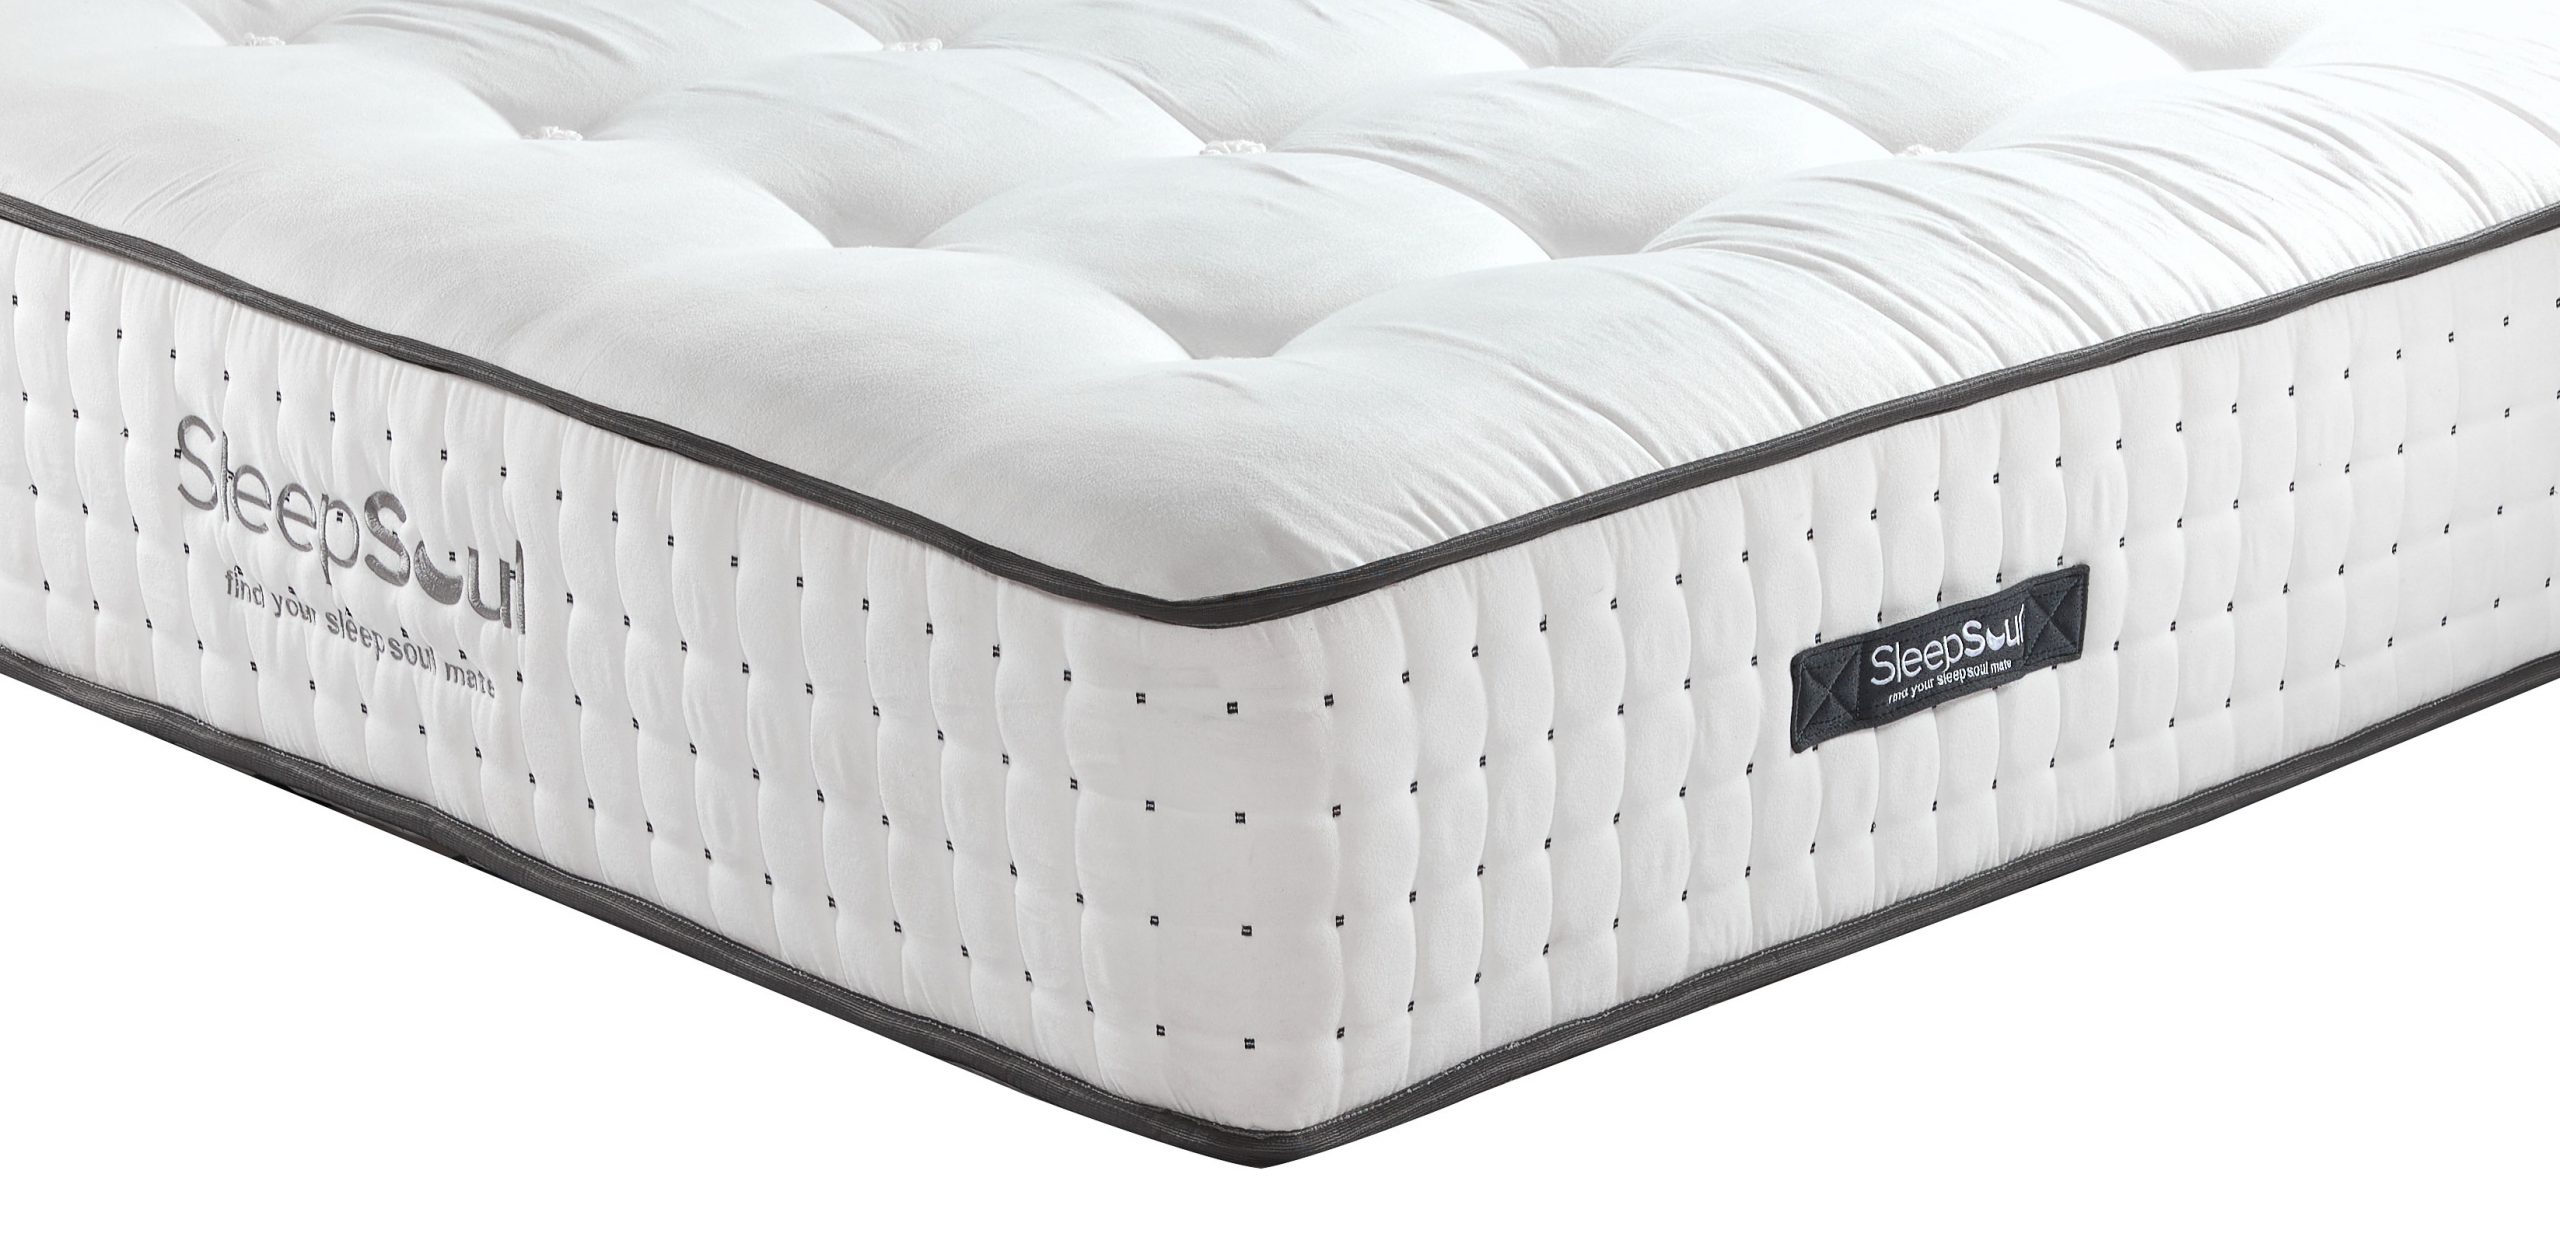 sleepsoul bliss mattress reviews